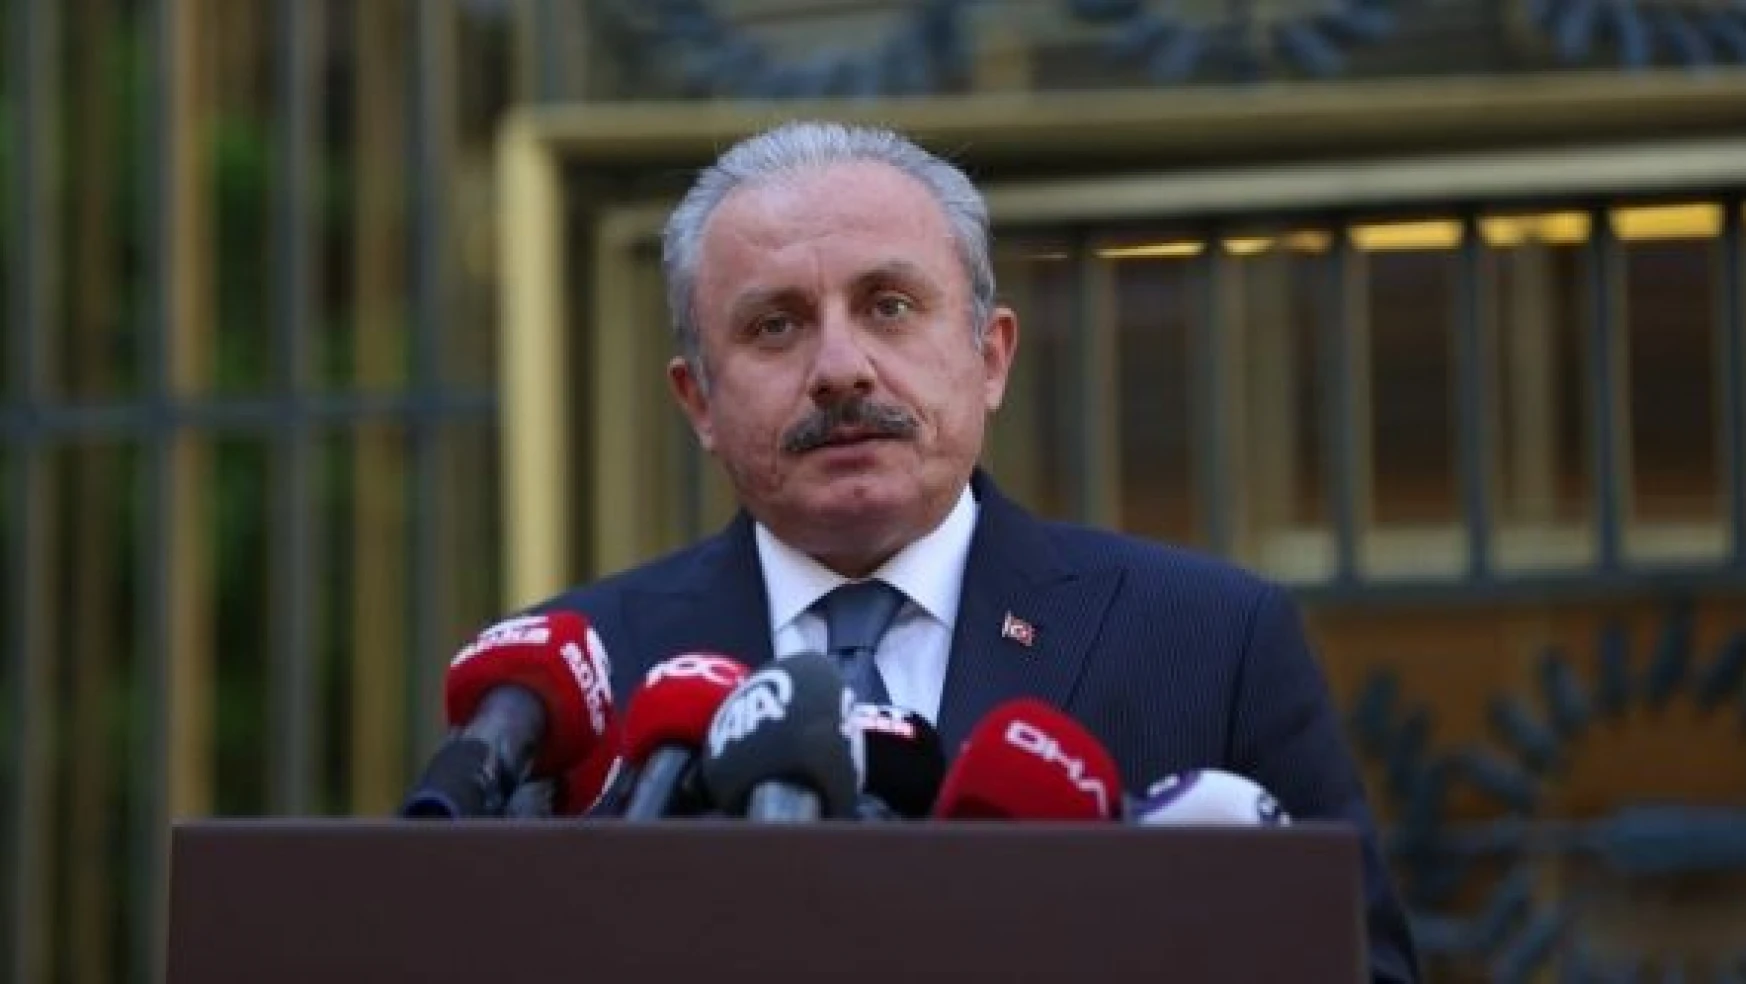 Meclis Başkanı Mustafa Şentop : Seçim kanunundaki değişikliğin en geç Haziran 2022'de tamamlanmış olması gerekir